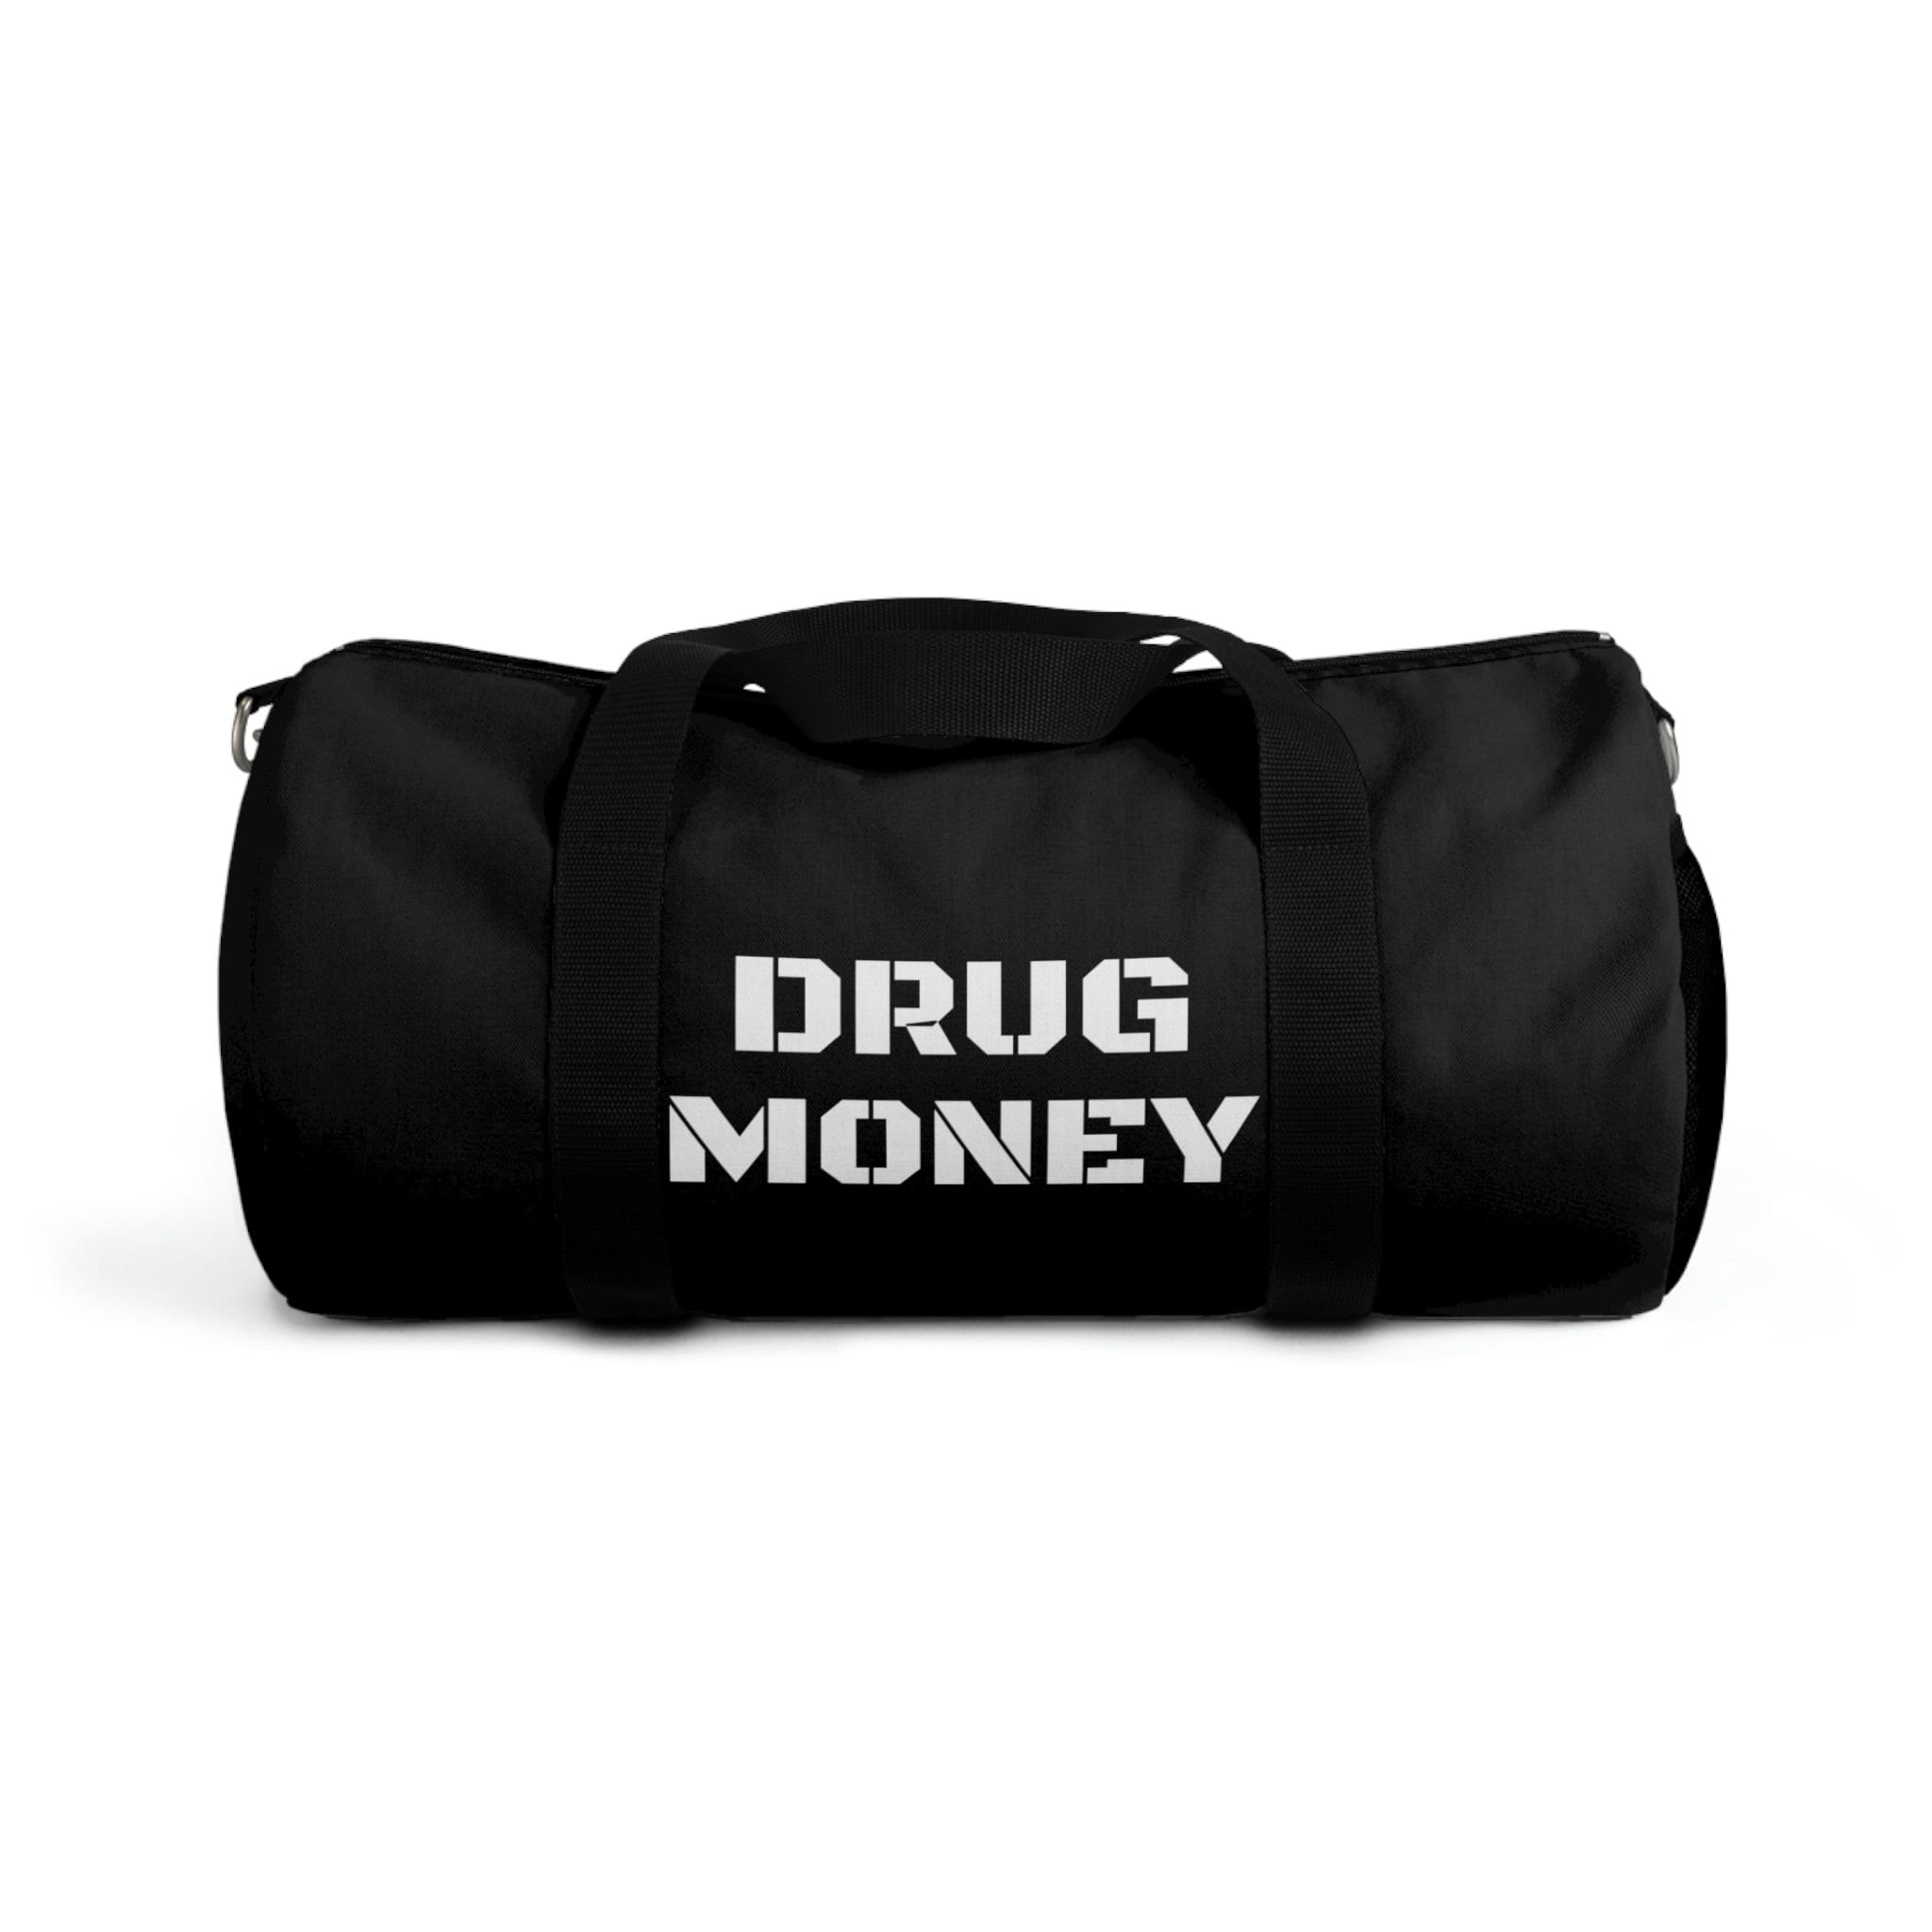 dollar designer duffle bag full of money